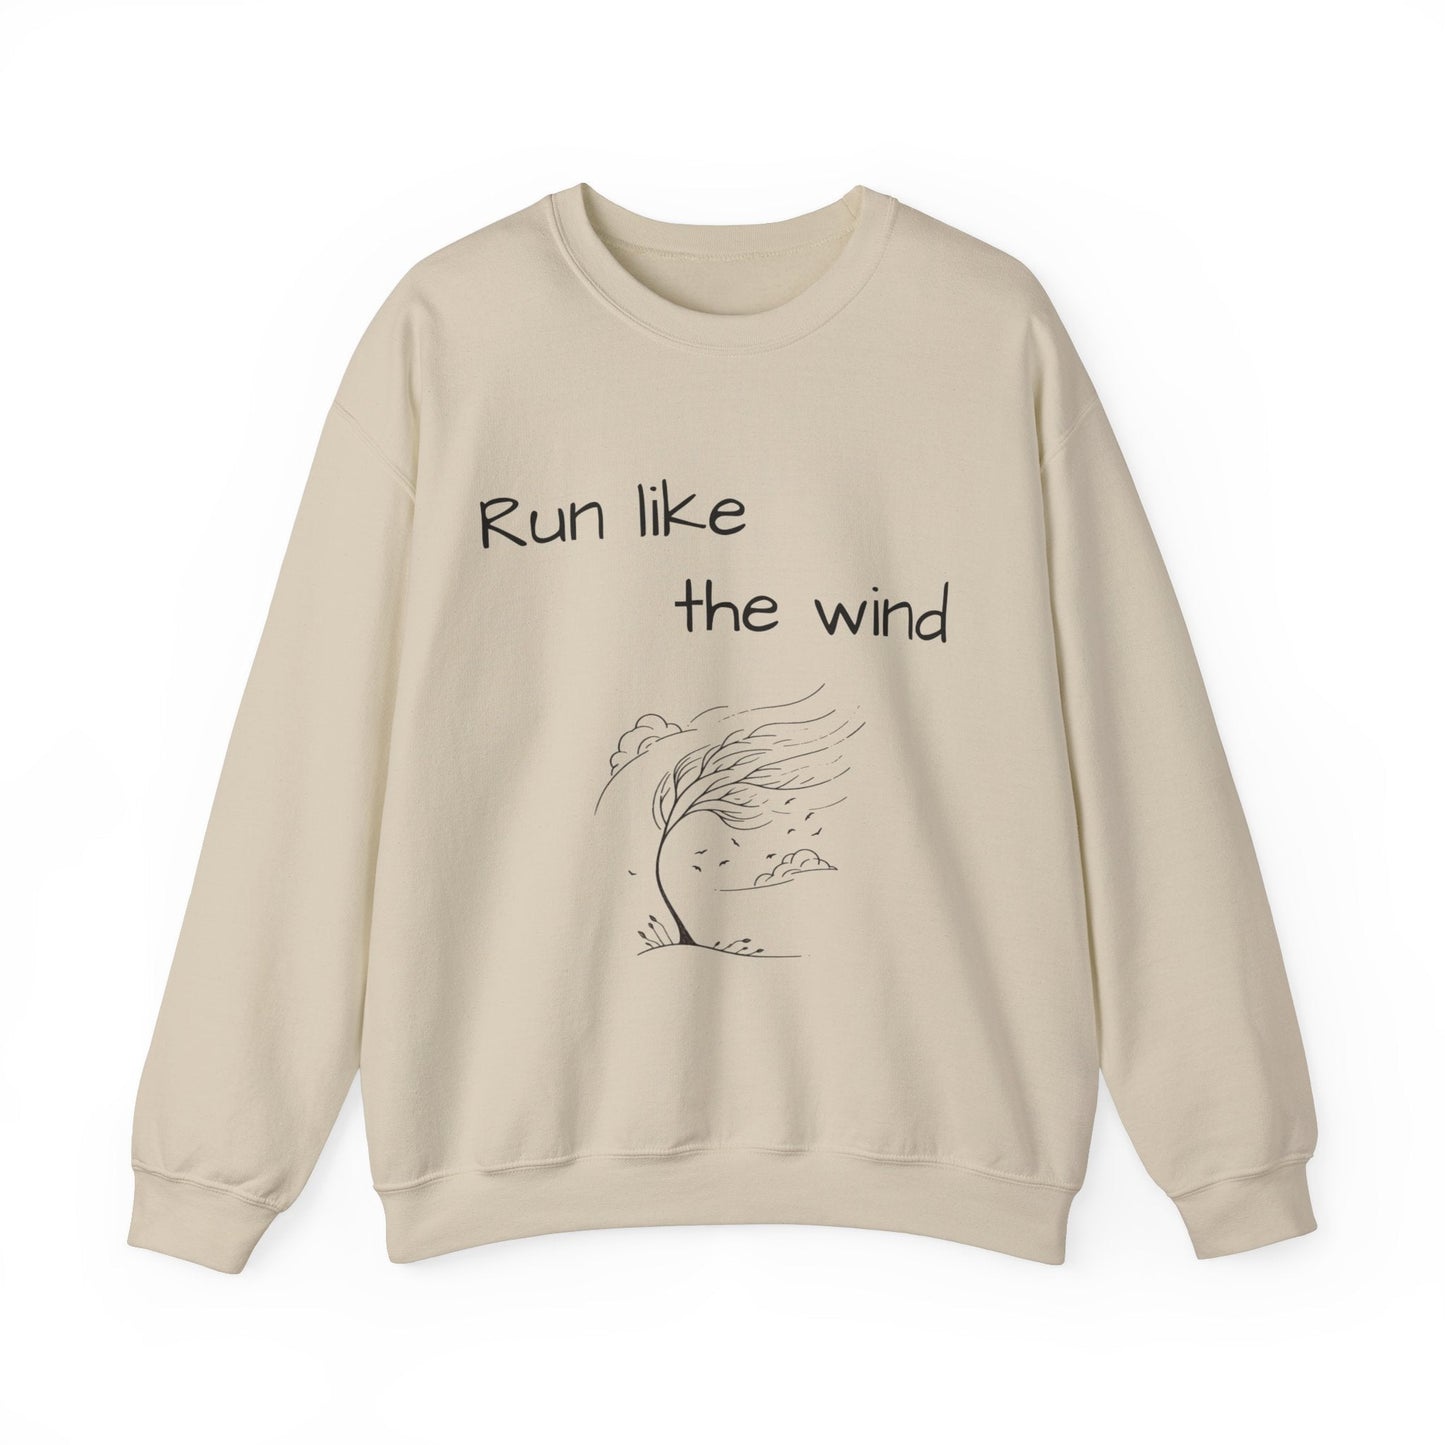 Run like the wind - Women's Sweatshirt